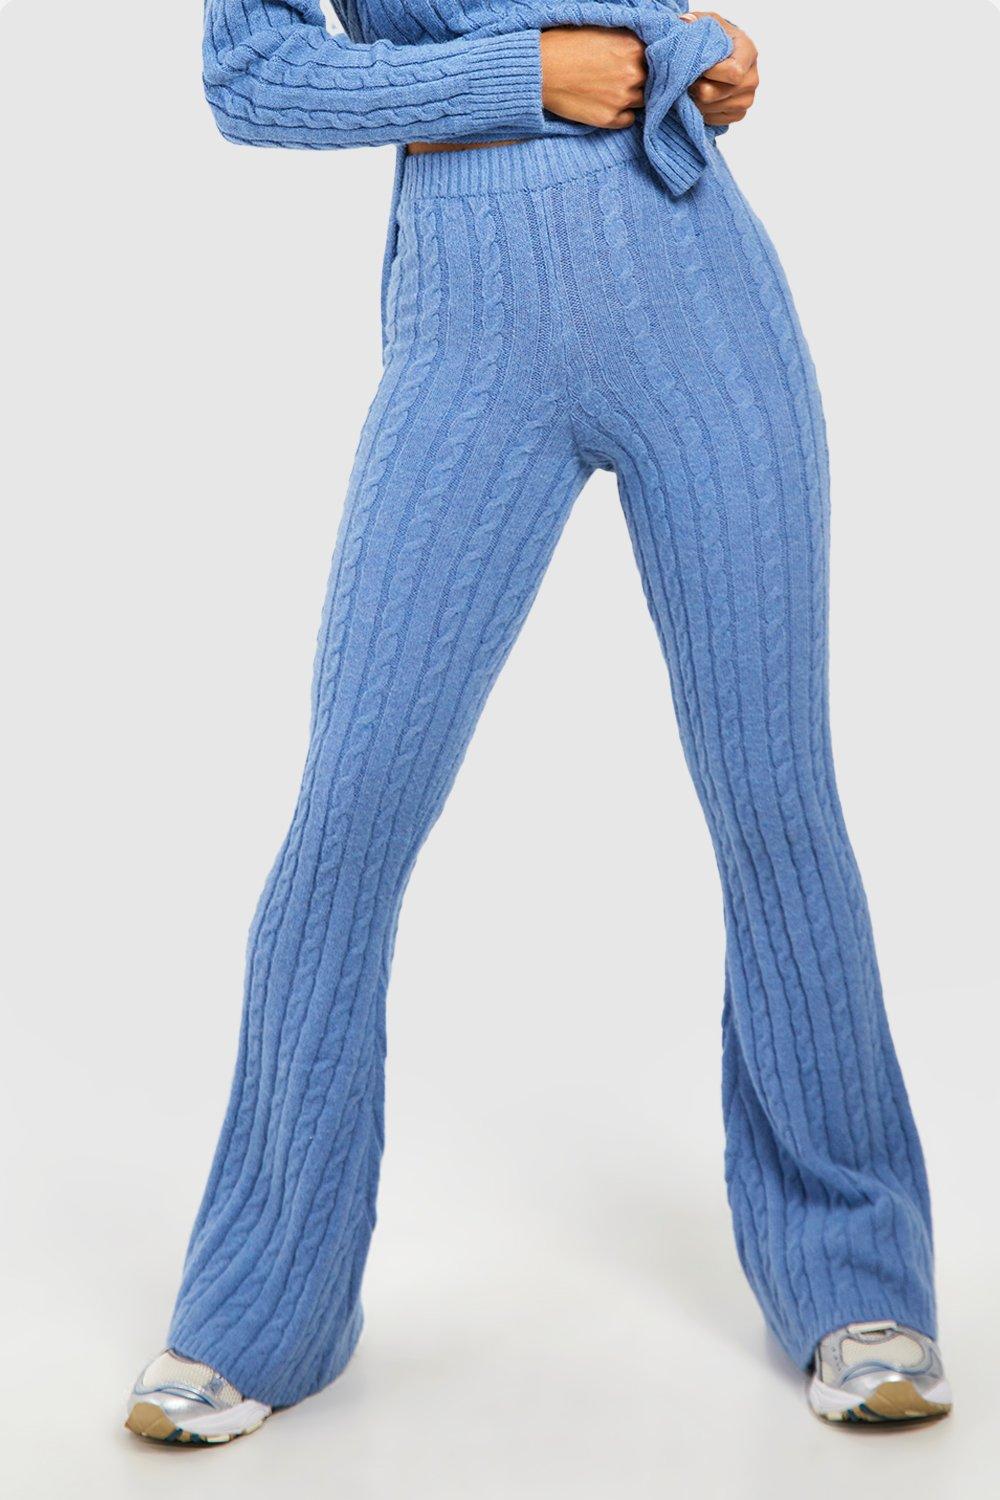 https://media.boohoo.com/i/boohoo/gzz63186_navy_xl_3/female-navy-soft-cable-knit-flare-pants